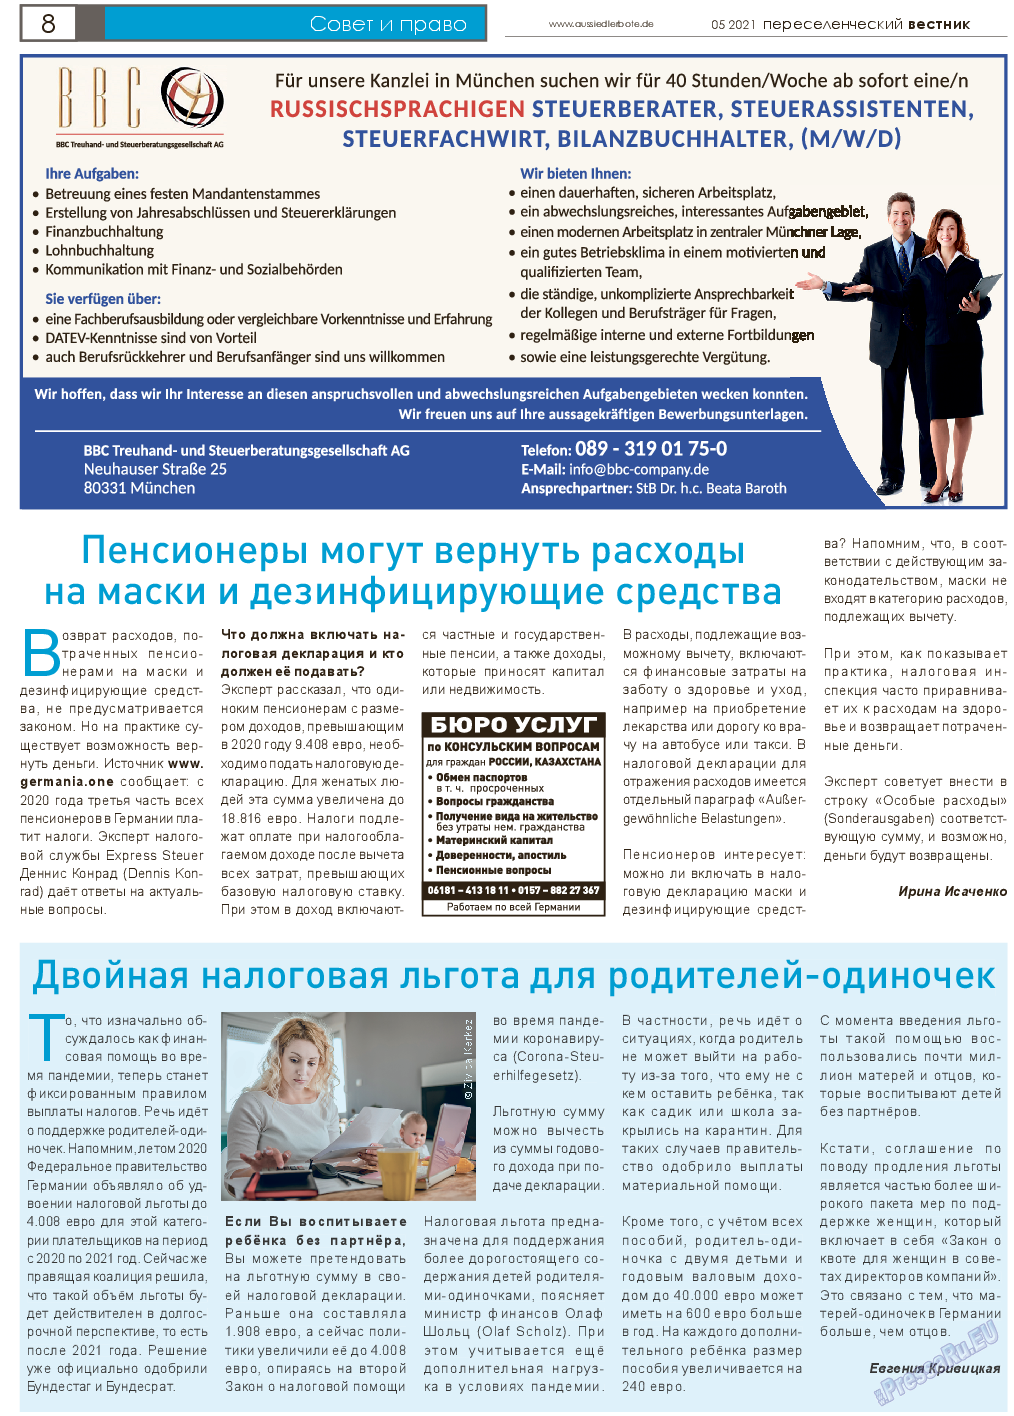 Переселенческий вестник, газета. 2021 №5 стр.8